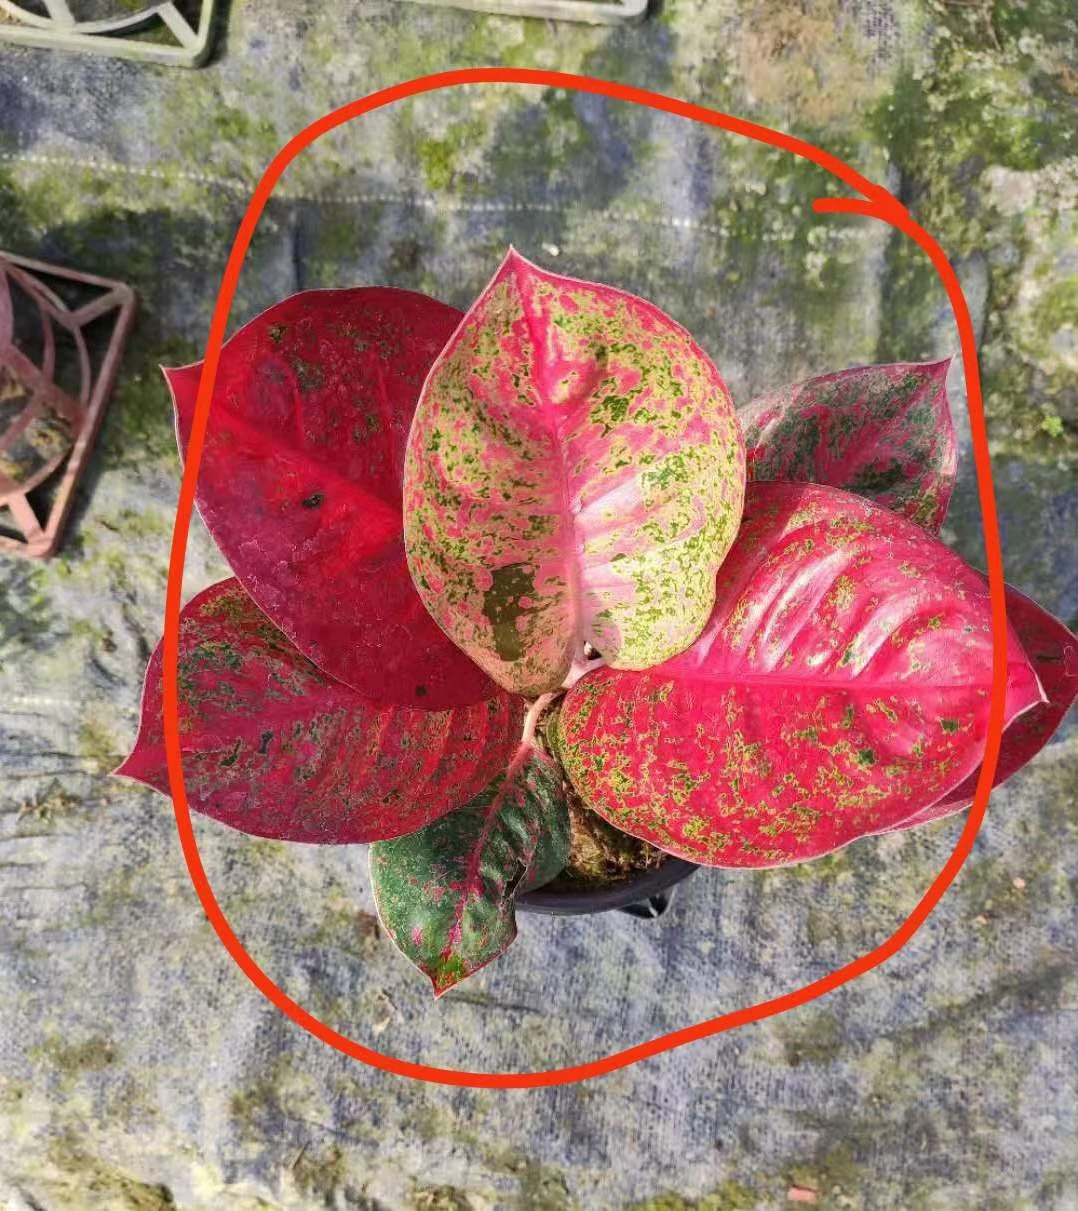 Оптовая продажа, горшочные растения Aglaonema в Тайланде, красного цвета, природного происхождения, разные размеры (1600315297437)